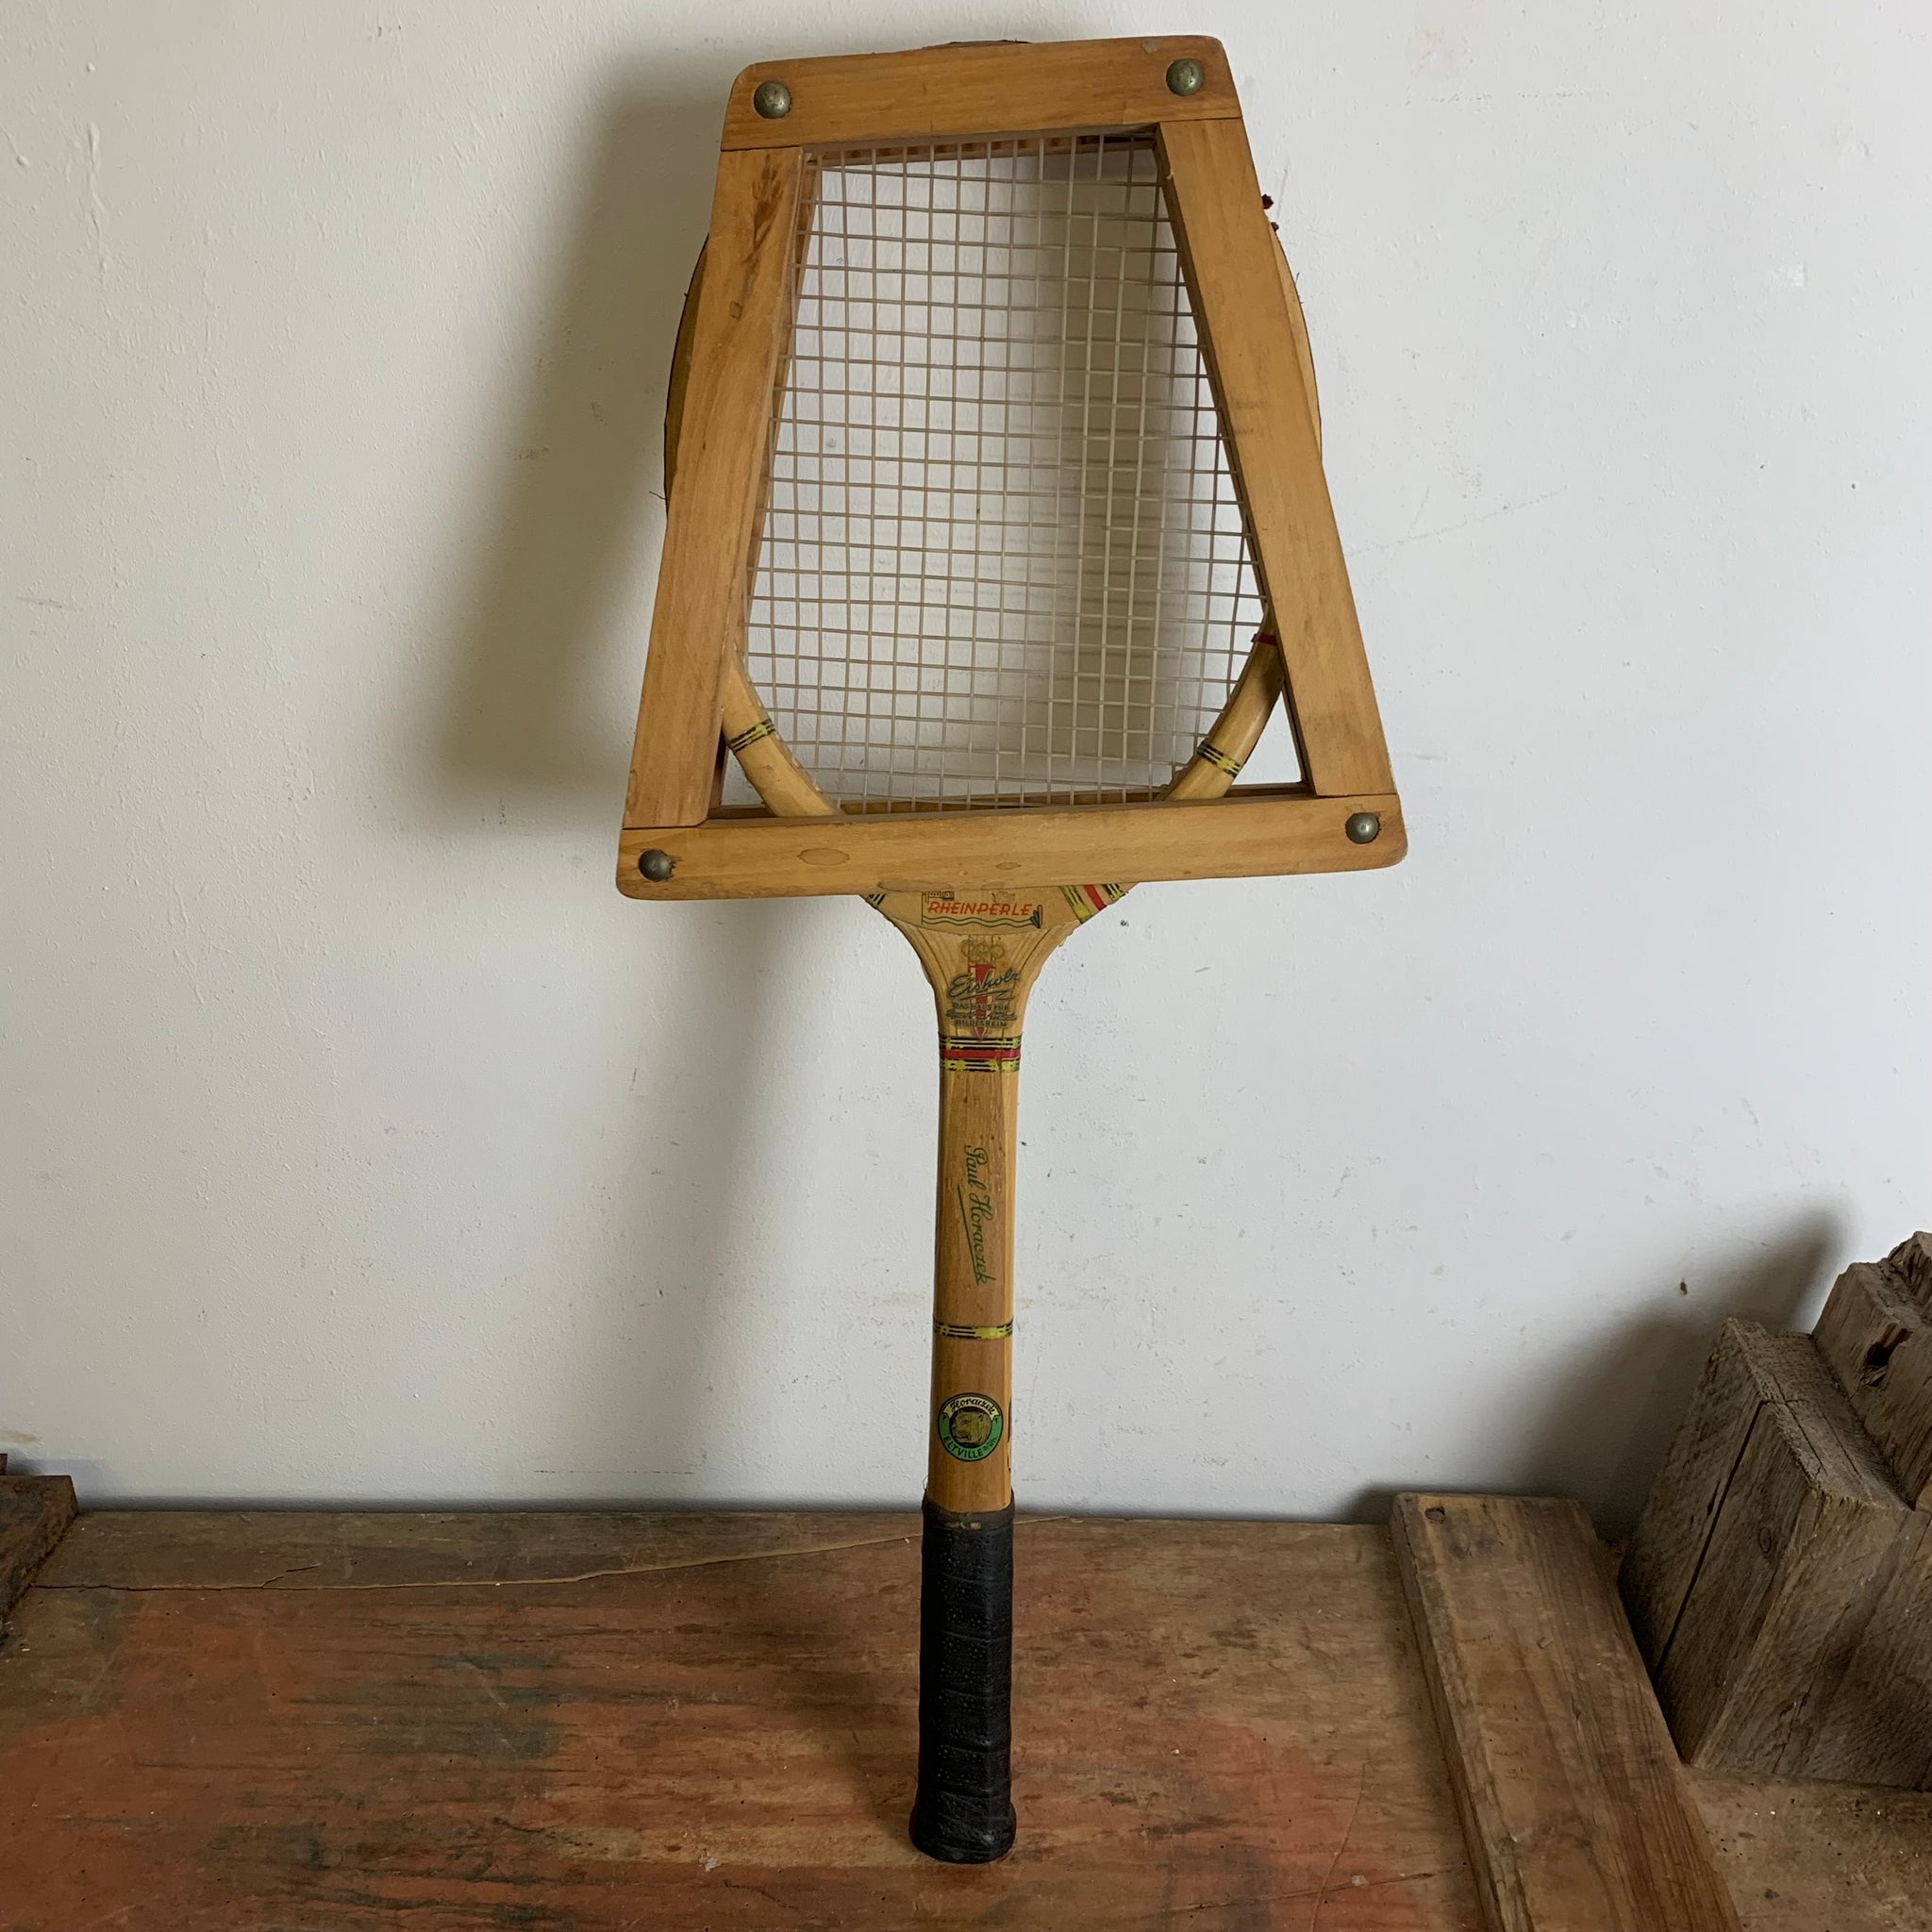 Vintage Holz Tennisschläger von Paul Horaczek mit Spannrahmen